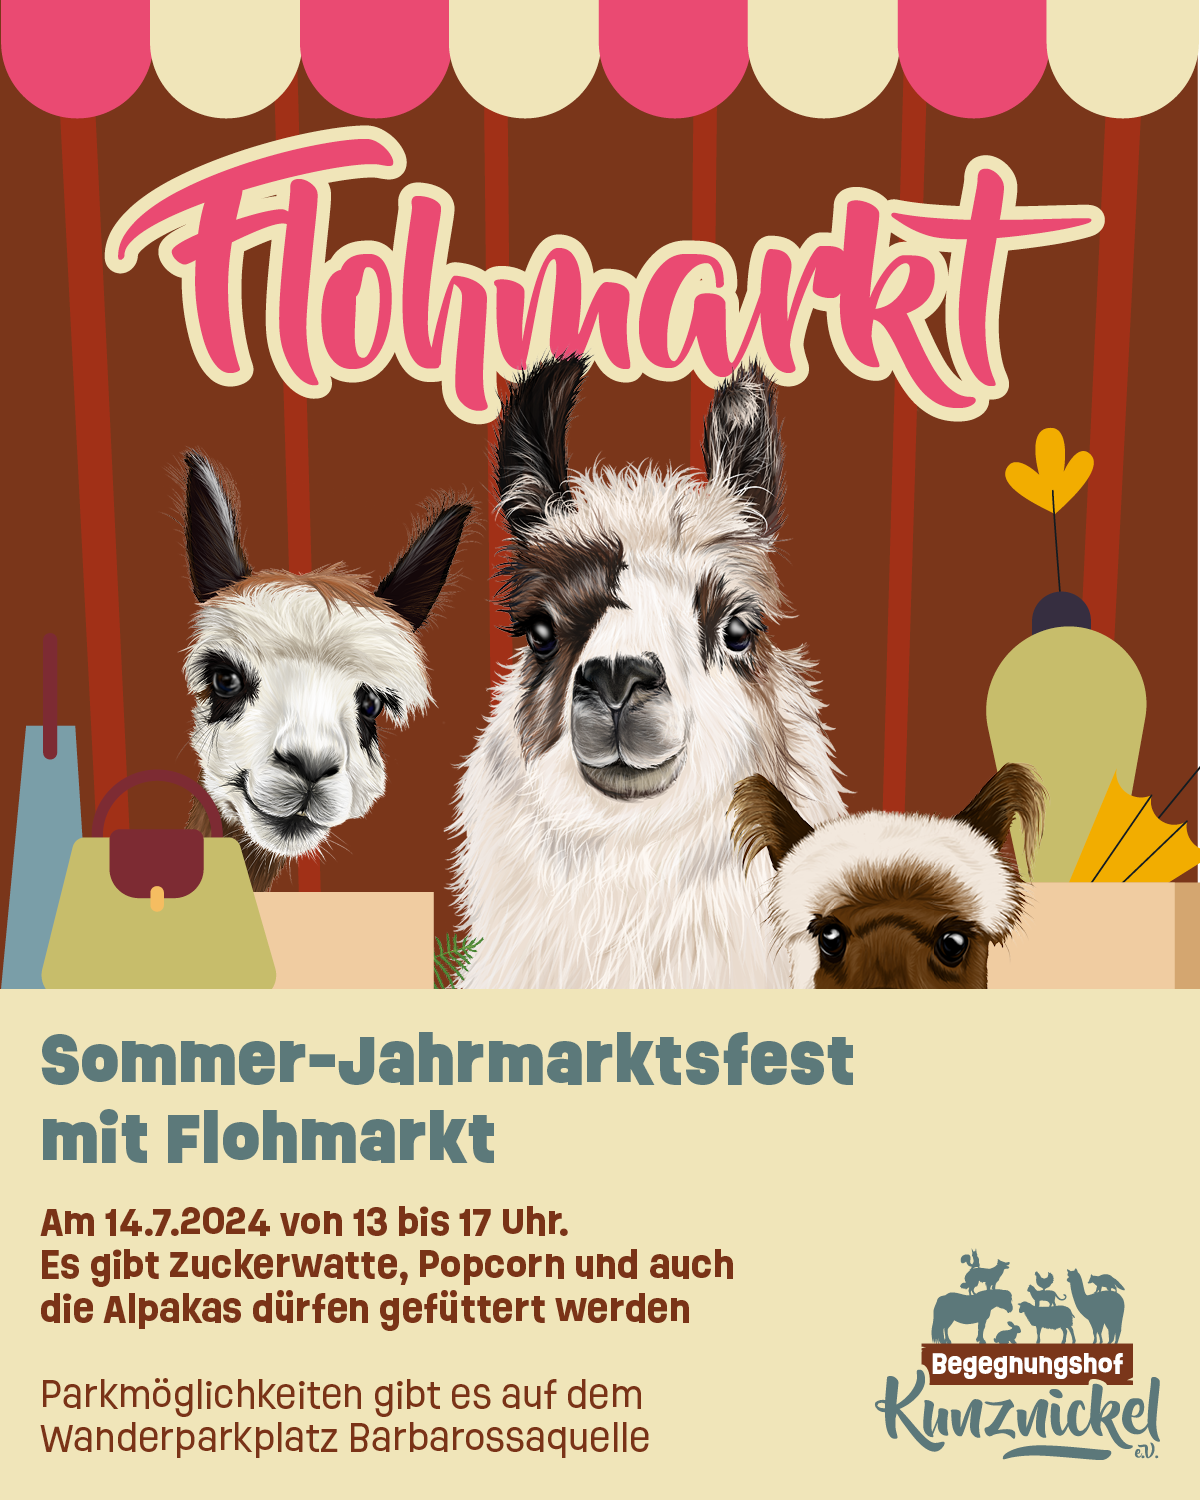 Featured image for “Jahrmarktsfest mit Flohmarkt”